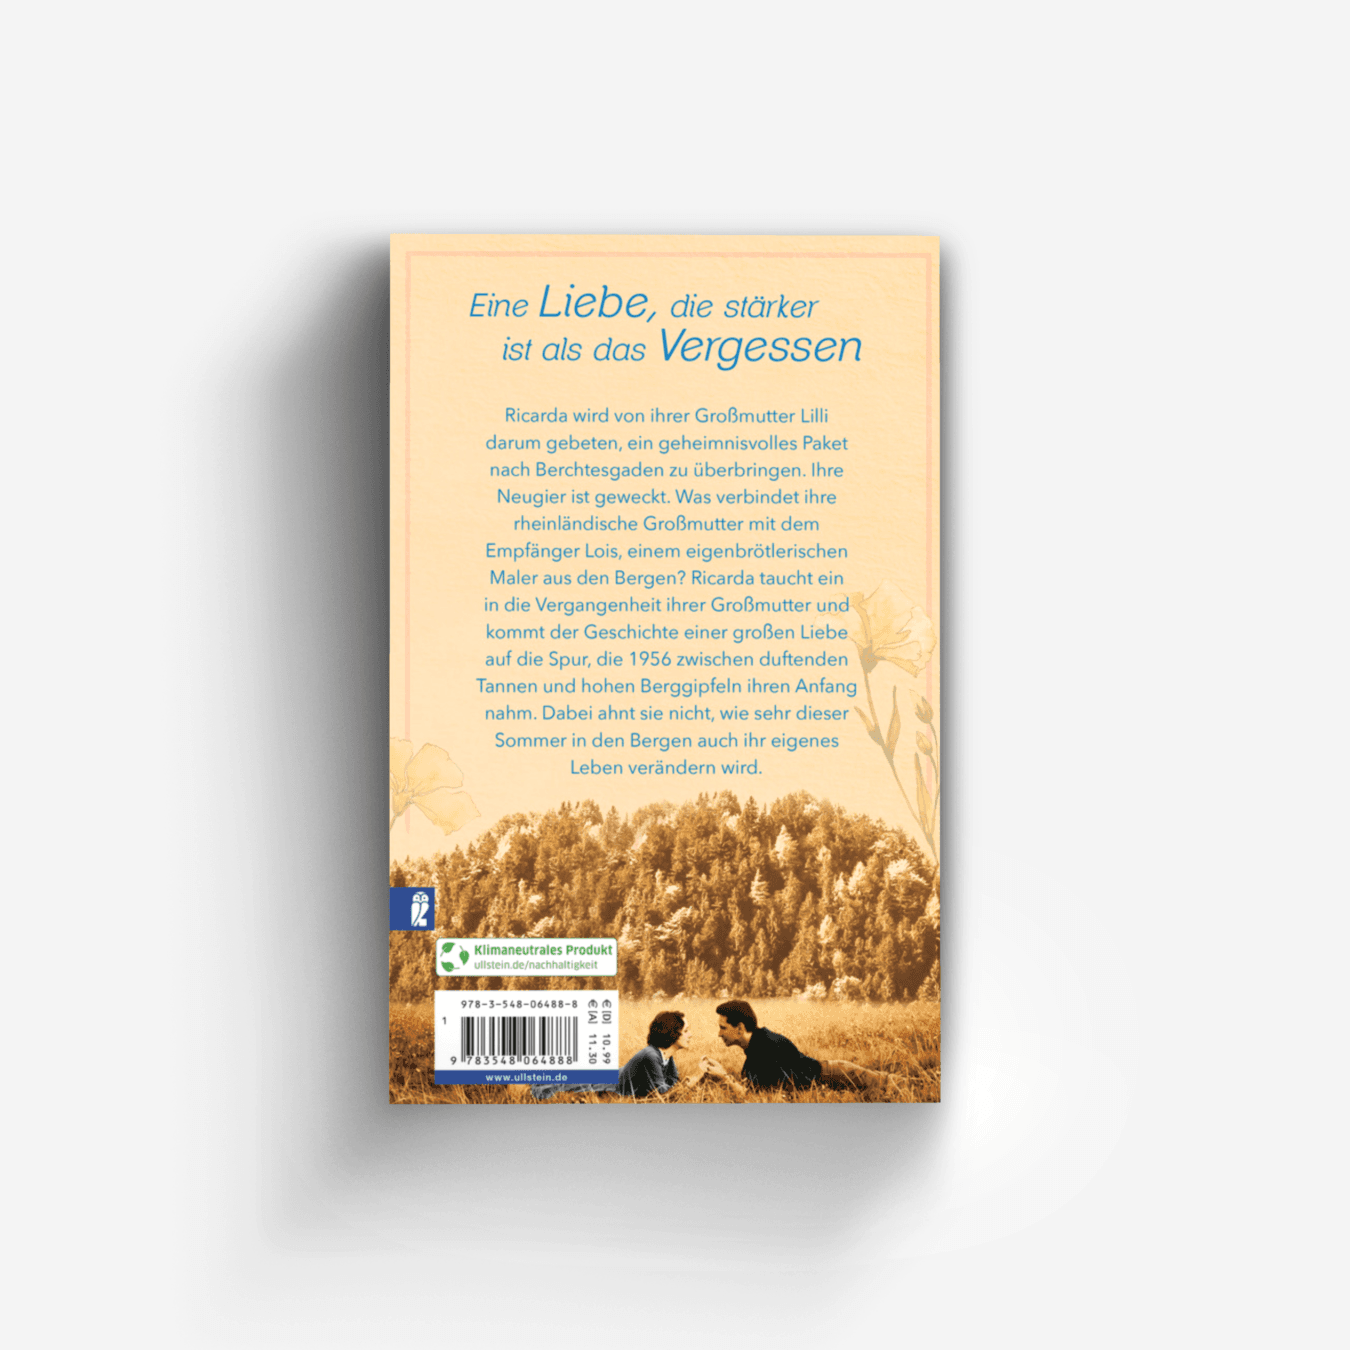 Buchcover von Lillis Liebe – Ein Sommer in Enzianblau